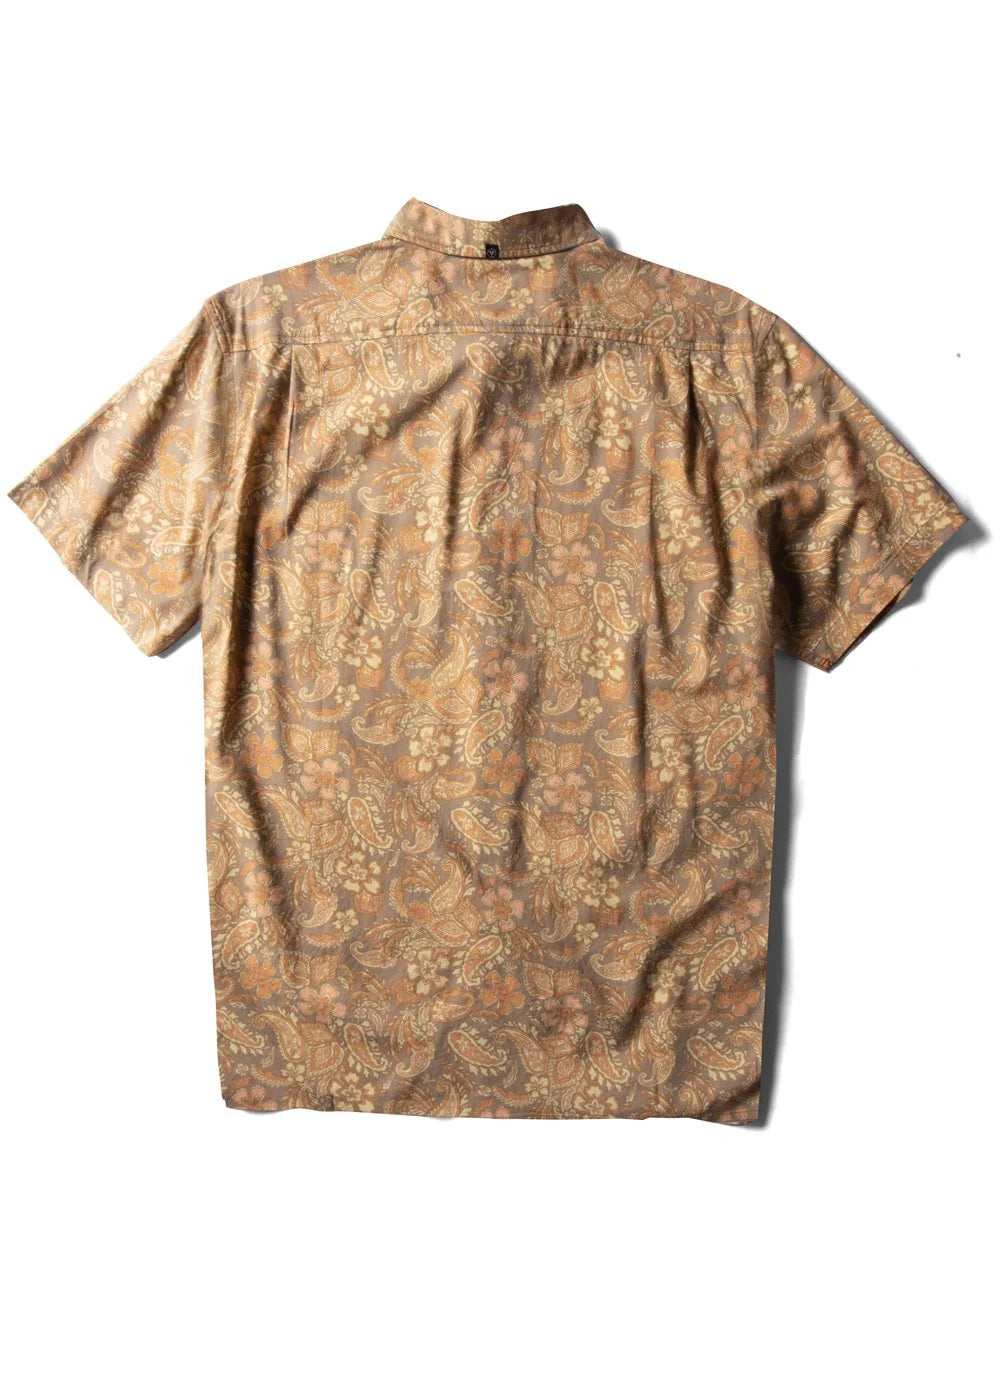 Vagabond Eco SS Shirt - Vissla